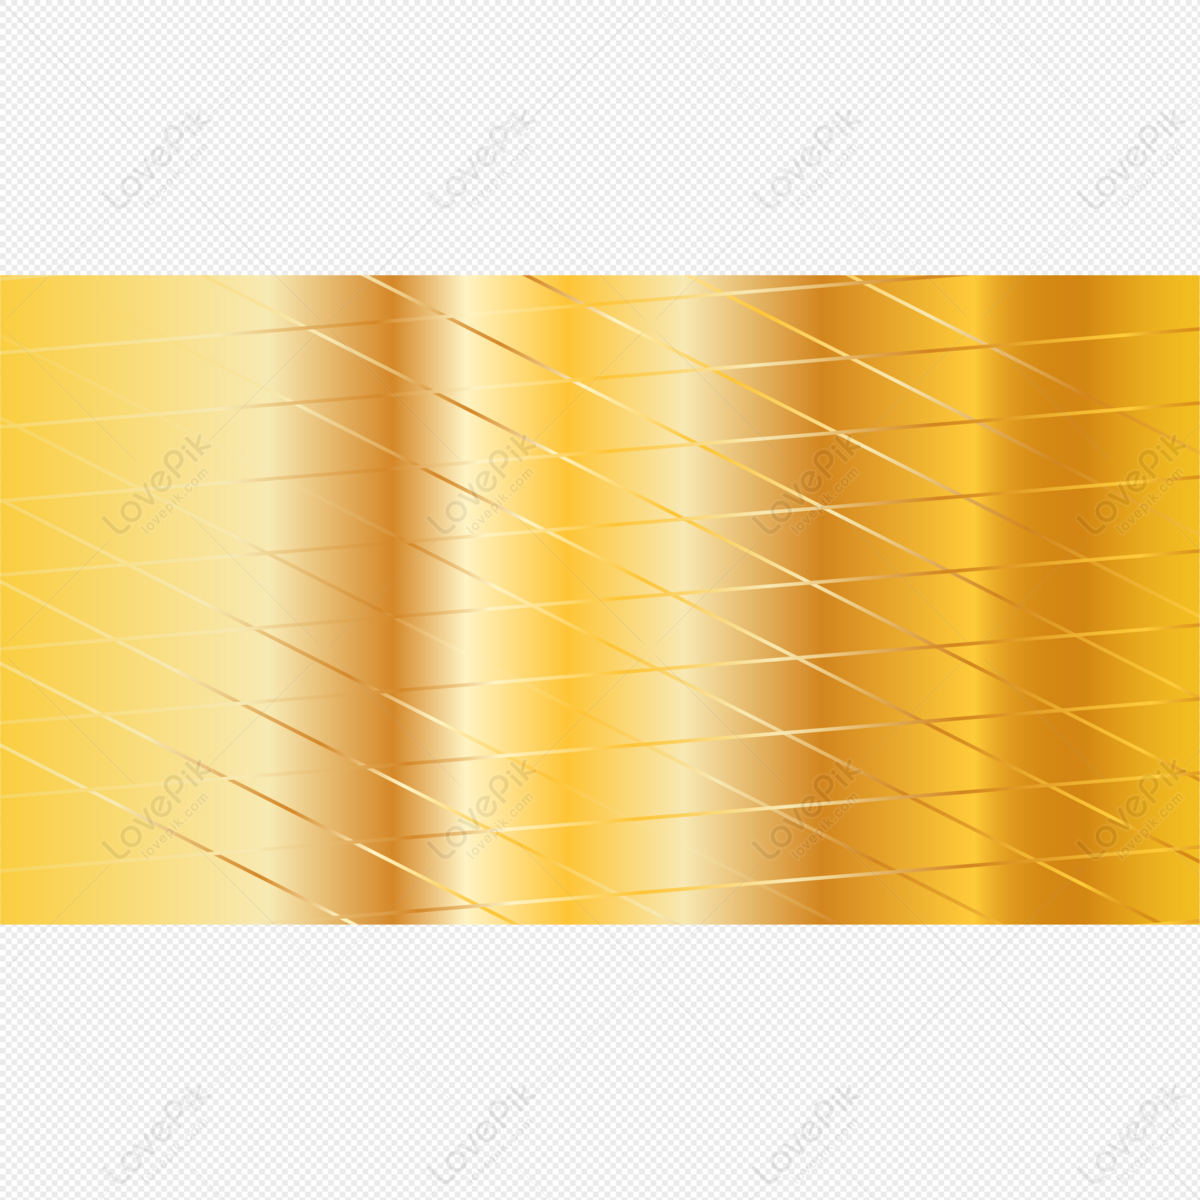 Nền Vàng PNG - Hãy cùng trải nghiệm những hình ảnh sắc nét và chất lượng cao với nền vàng PNG. Thiết kế của bạn sẽ được tăng cường với nền andng tuyệt đẹp, góp phần làm nổi bật chủ đề và thu hút sự chú ý từ người xem.